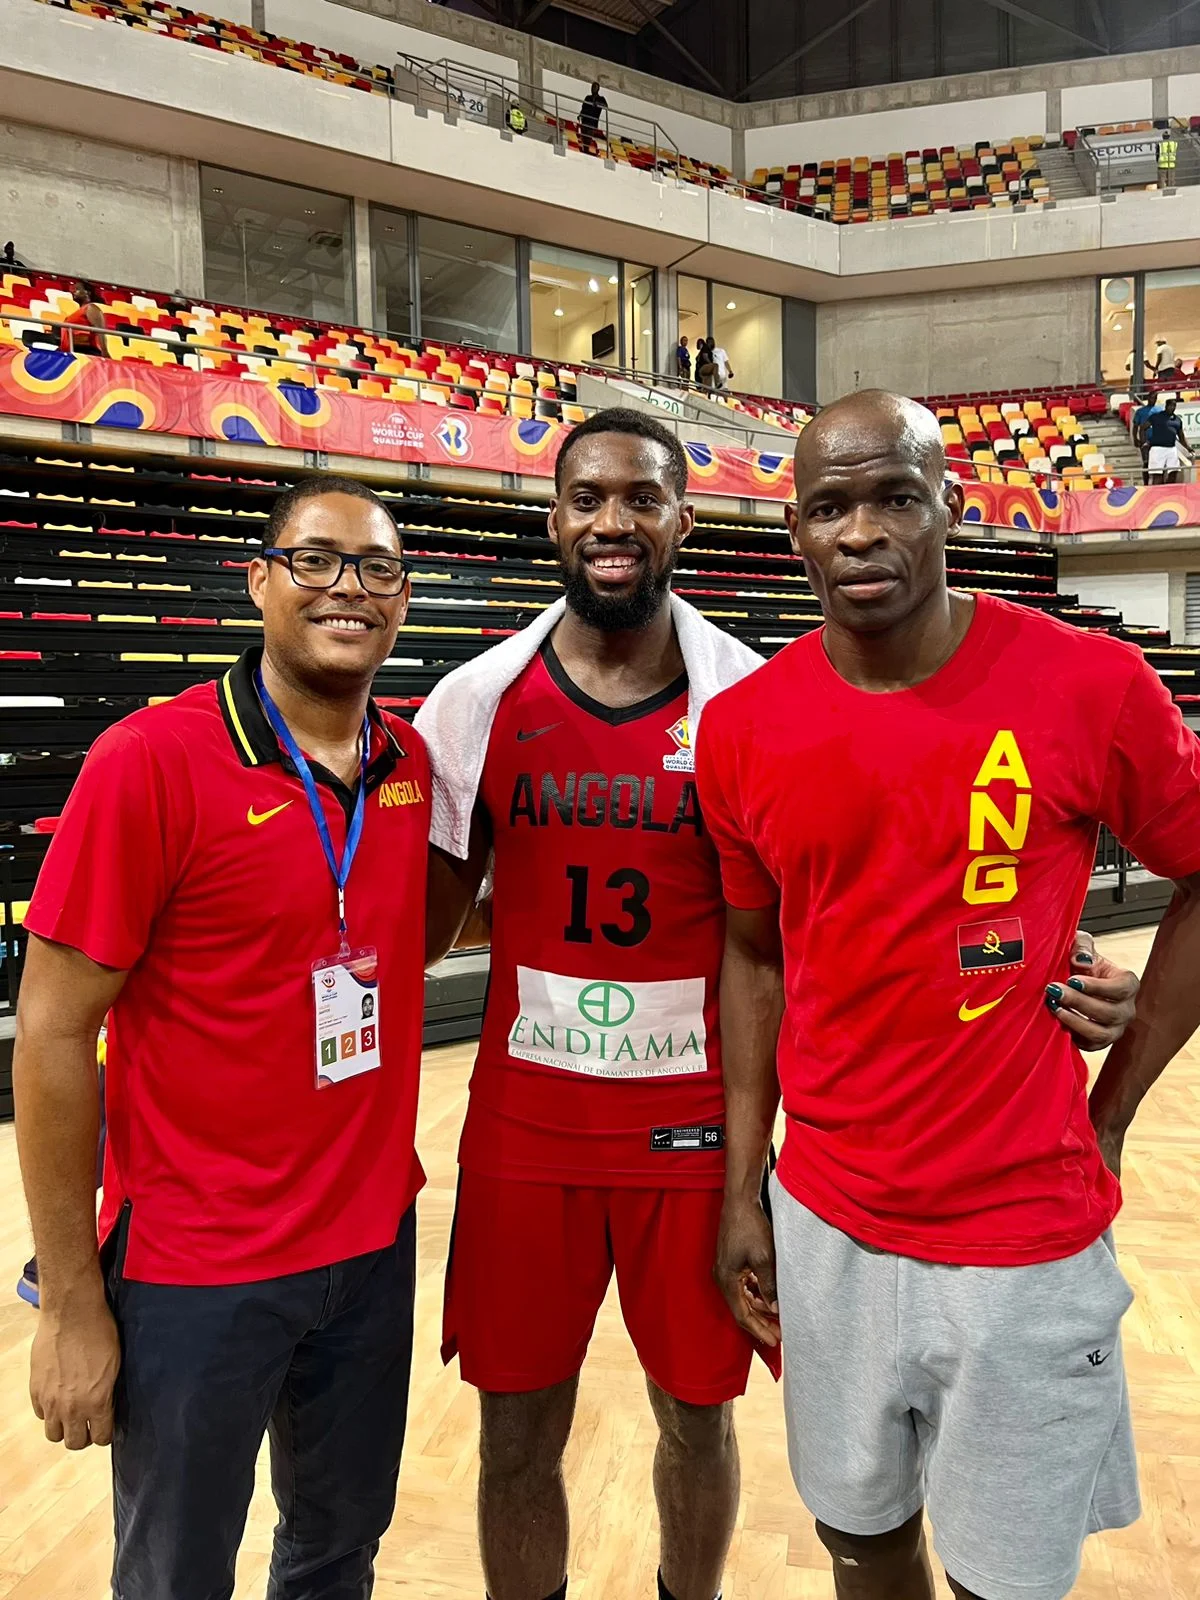 Angola qualifica-se pela nona vez para o Mundial de basquetebol